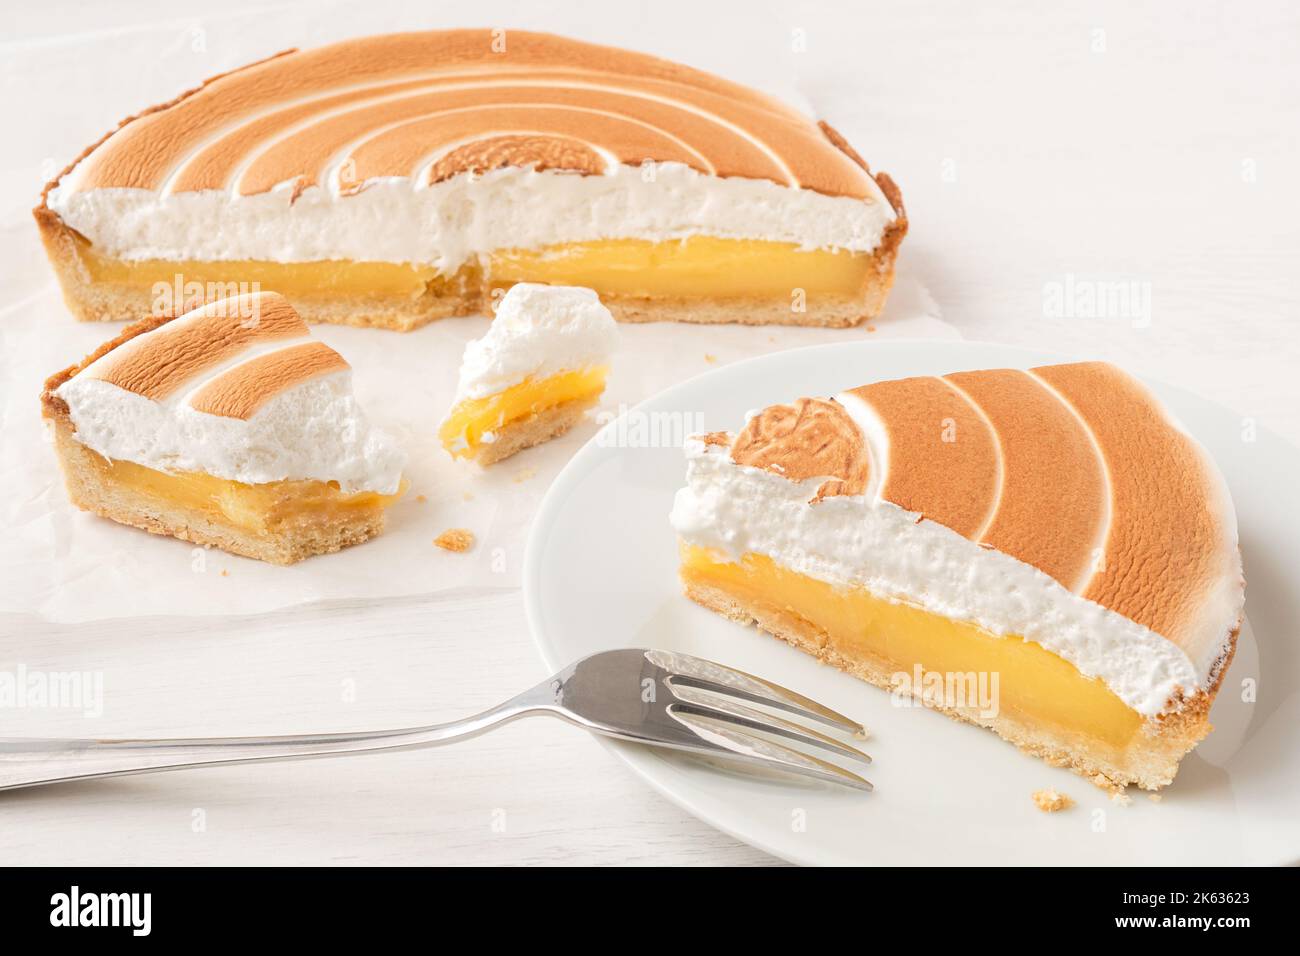 Corte la tarta de limón con merengue encima en papel de hornear junto a una porción de tarta de limón en el plato con un tenedor. Foto de stock